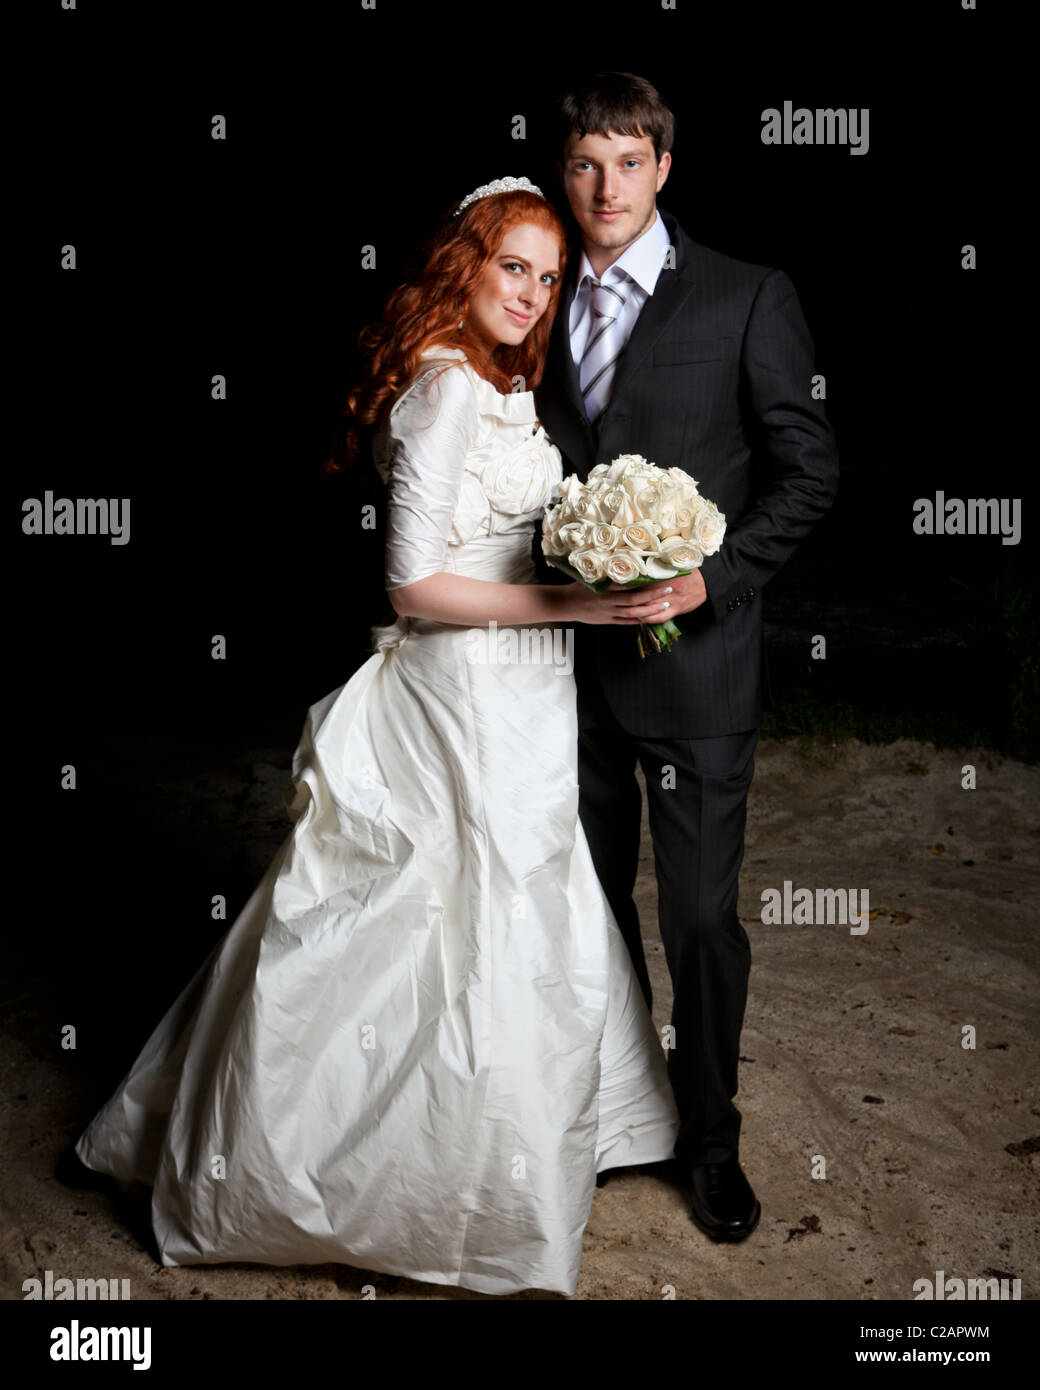 La novia y el novio en el día de su boda. Banco del río en la noche. Estado de Nueva York. Modelo de liberación firmado. Foto de stock